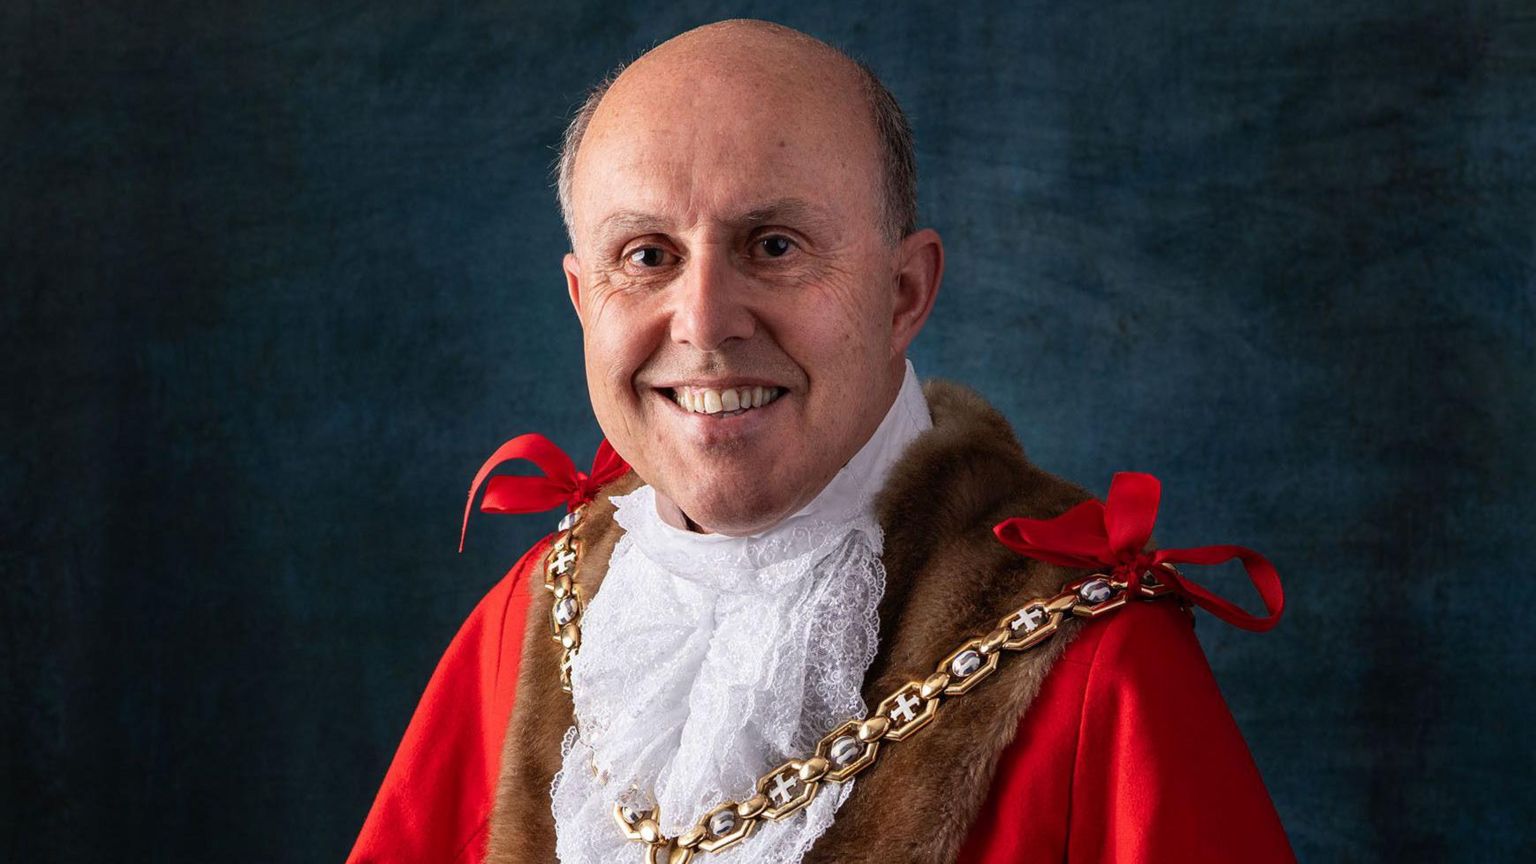 Cheltenham Mayor Paul Baker